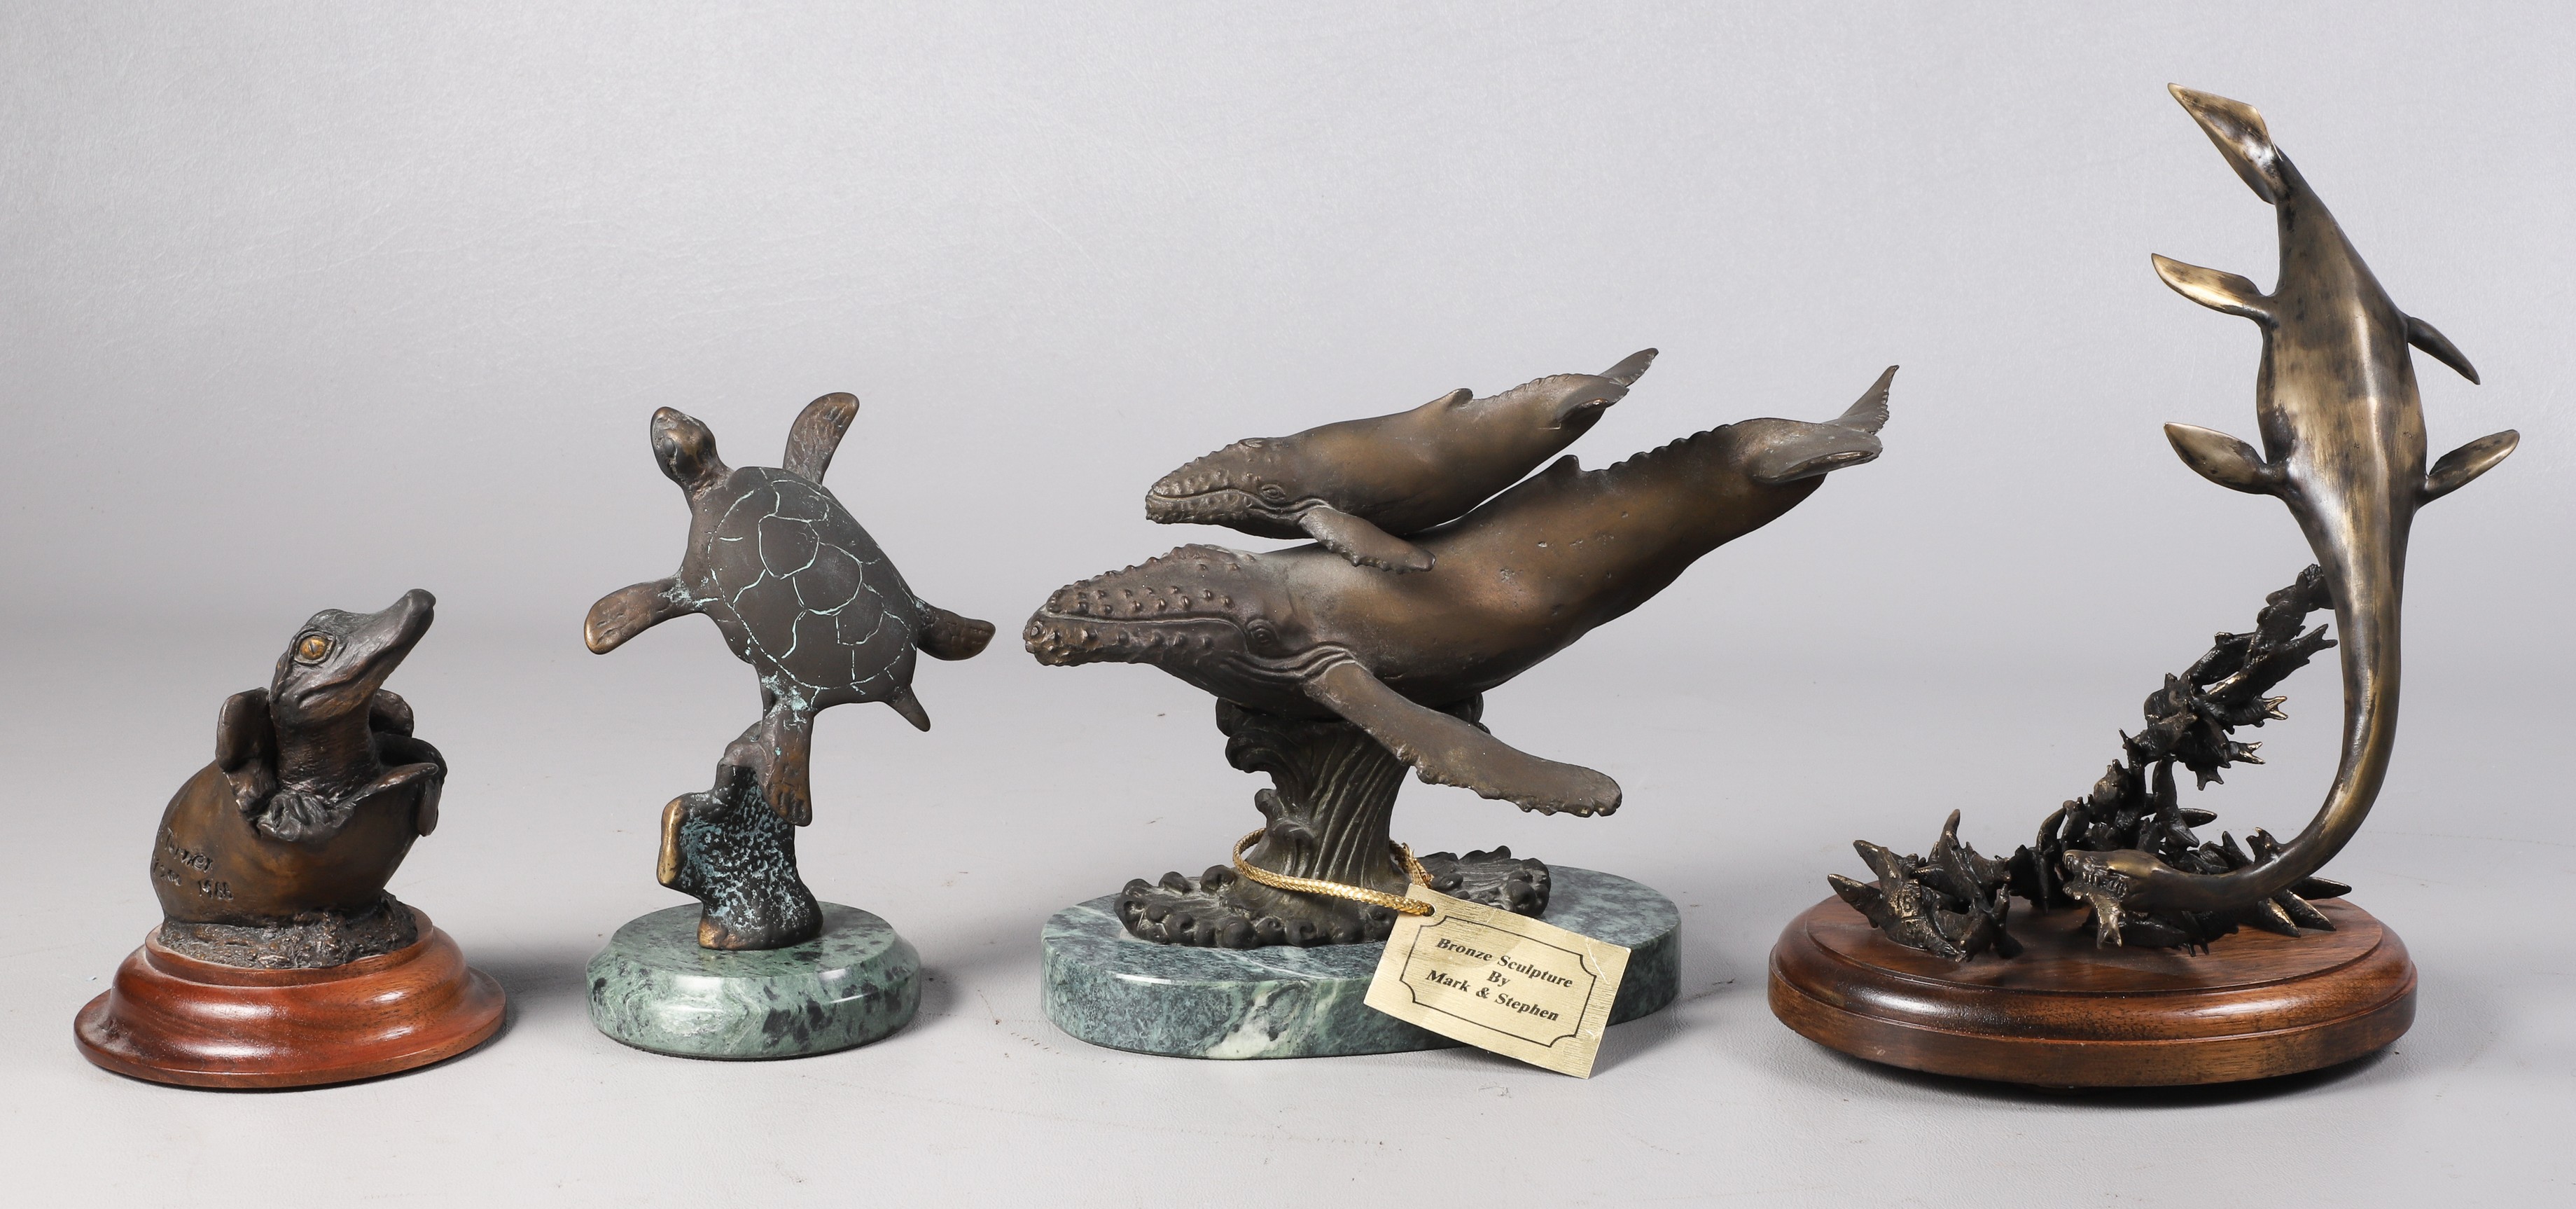  4 Sea creature bronze sculptures  2e181e